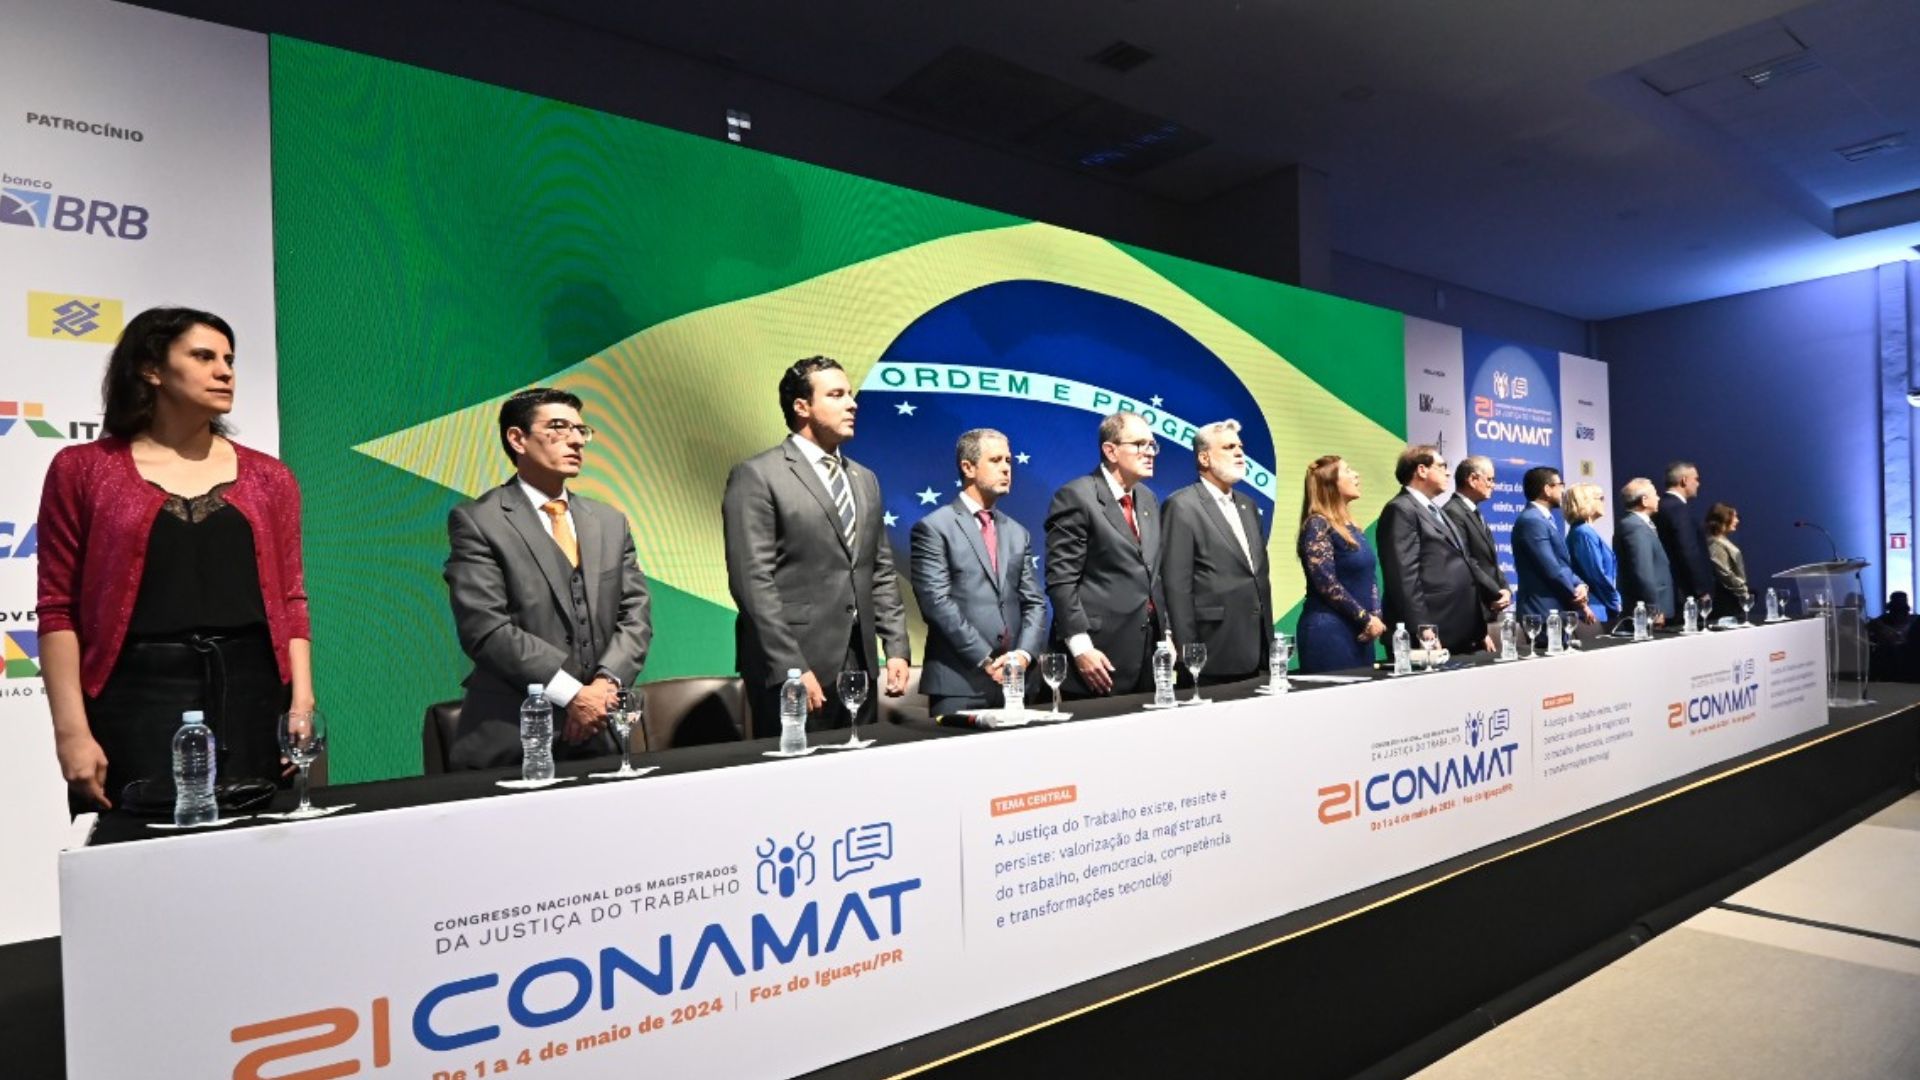 Presidente da AMAPAR destaca eixos debatidos no Conamat, realizado pela Anamatra e Amatra 9, em Foz do Iguaçu 